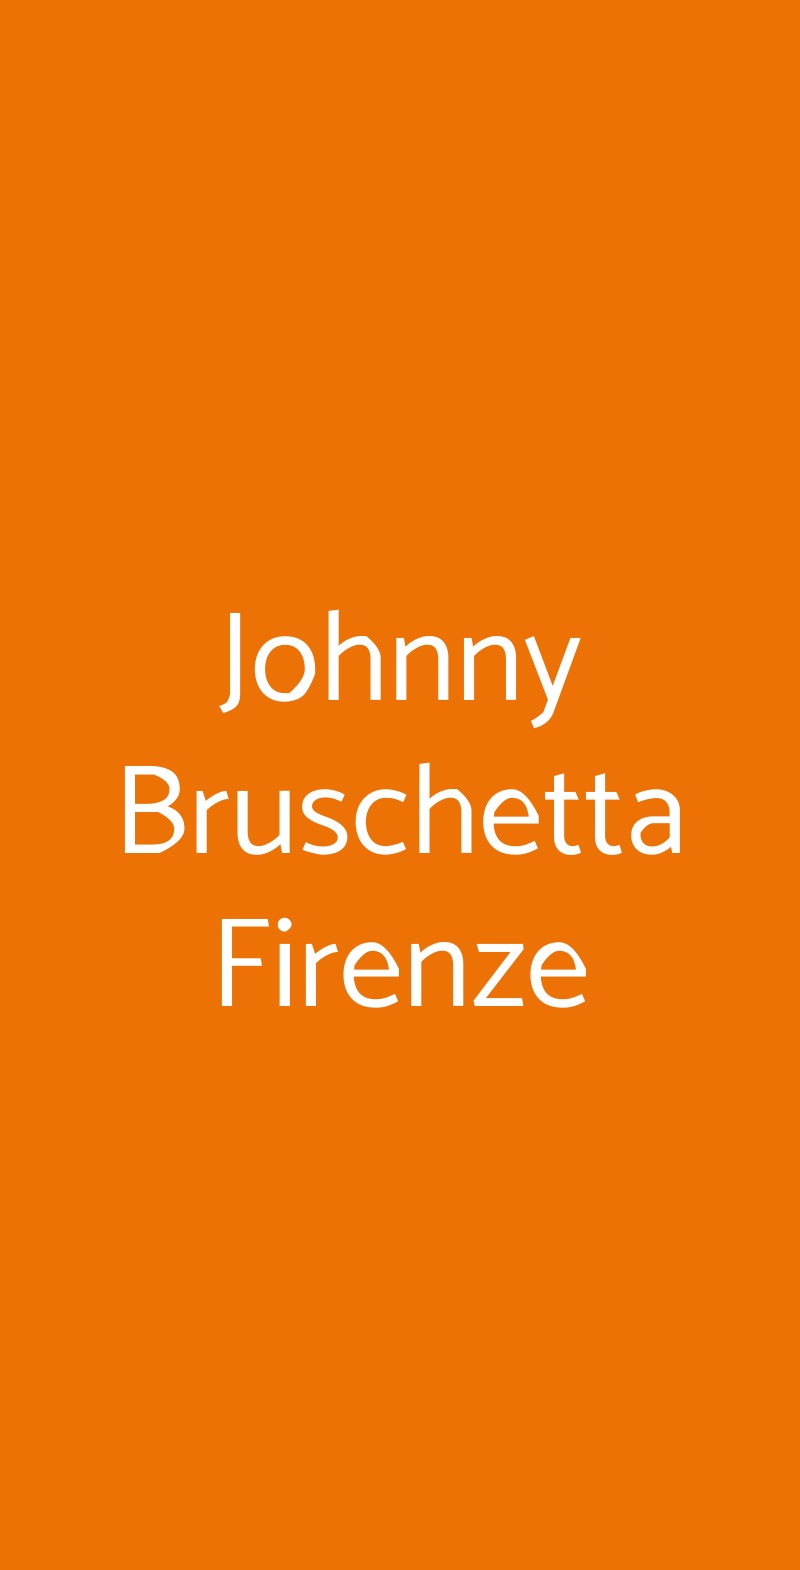 Johnny Bruschetta Firenze Firenze menù 1 pagina